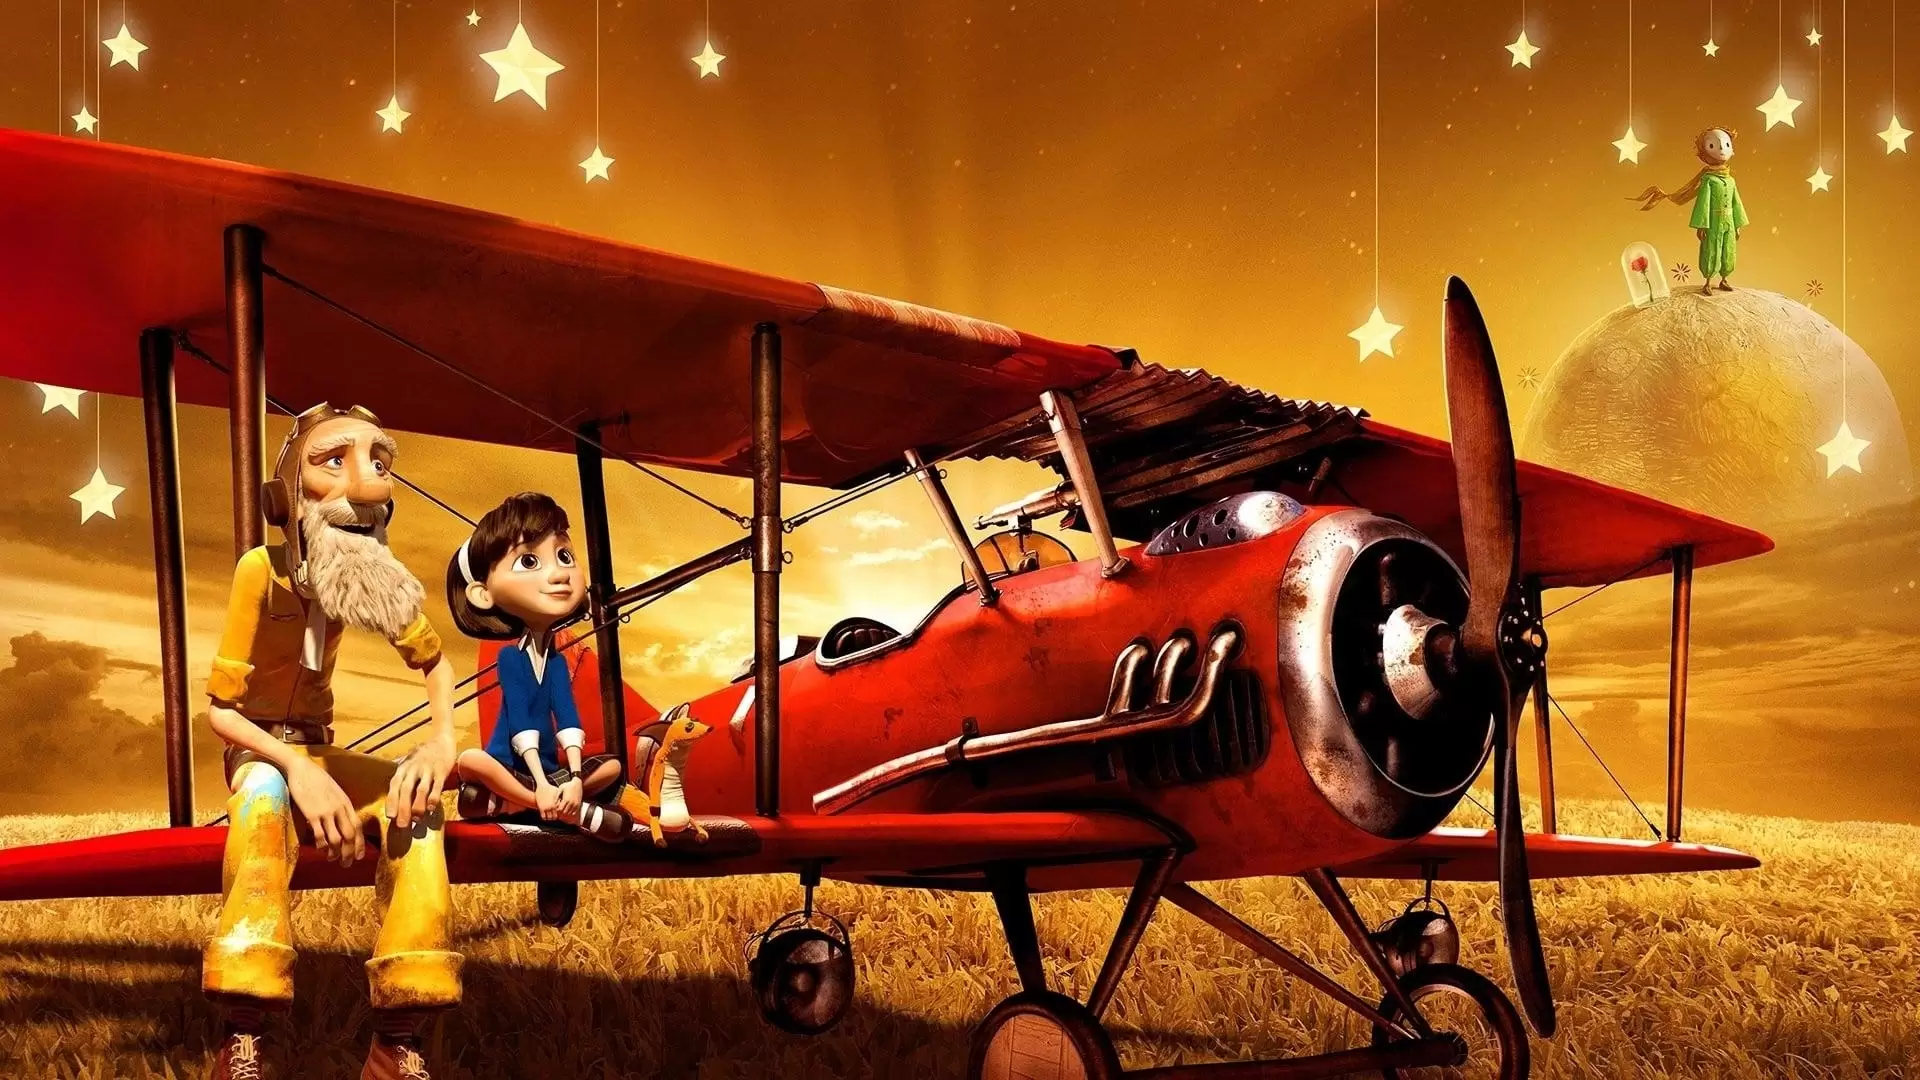 دانلود انیمیشن The Little Prince 2015 (شاهزاده کوچولو) با زیرنویس فارسی و تماشای آنلاین